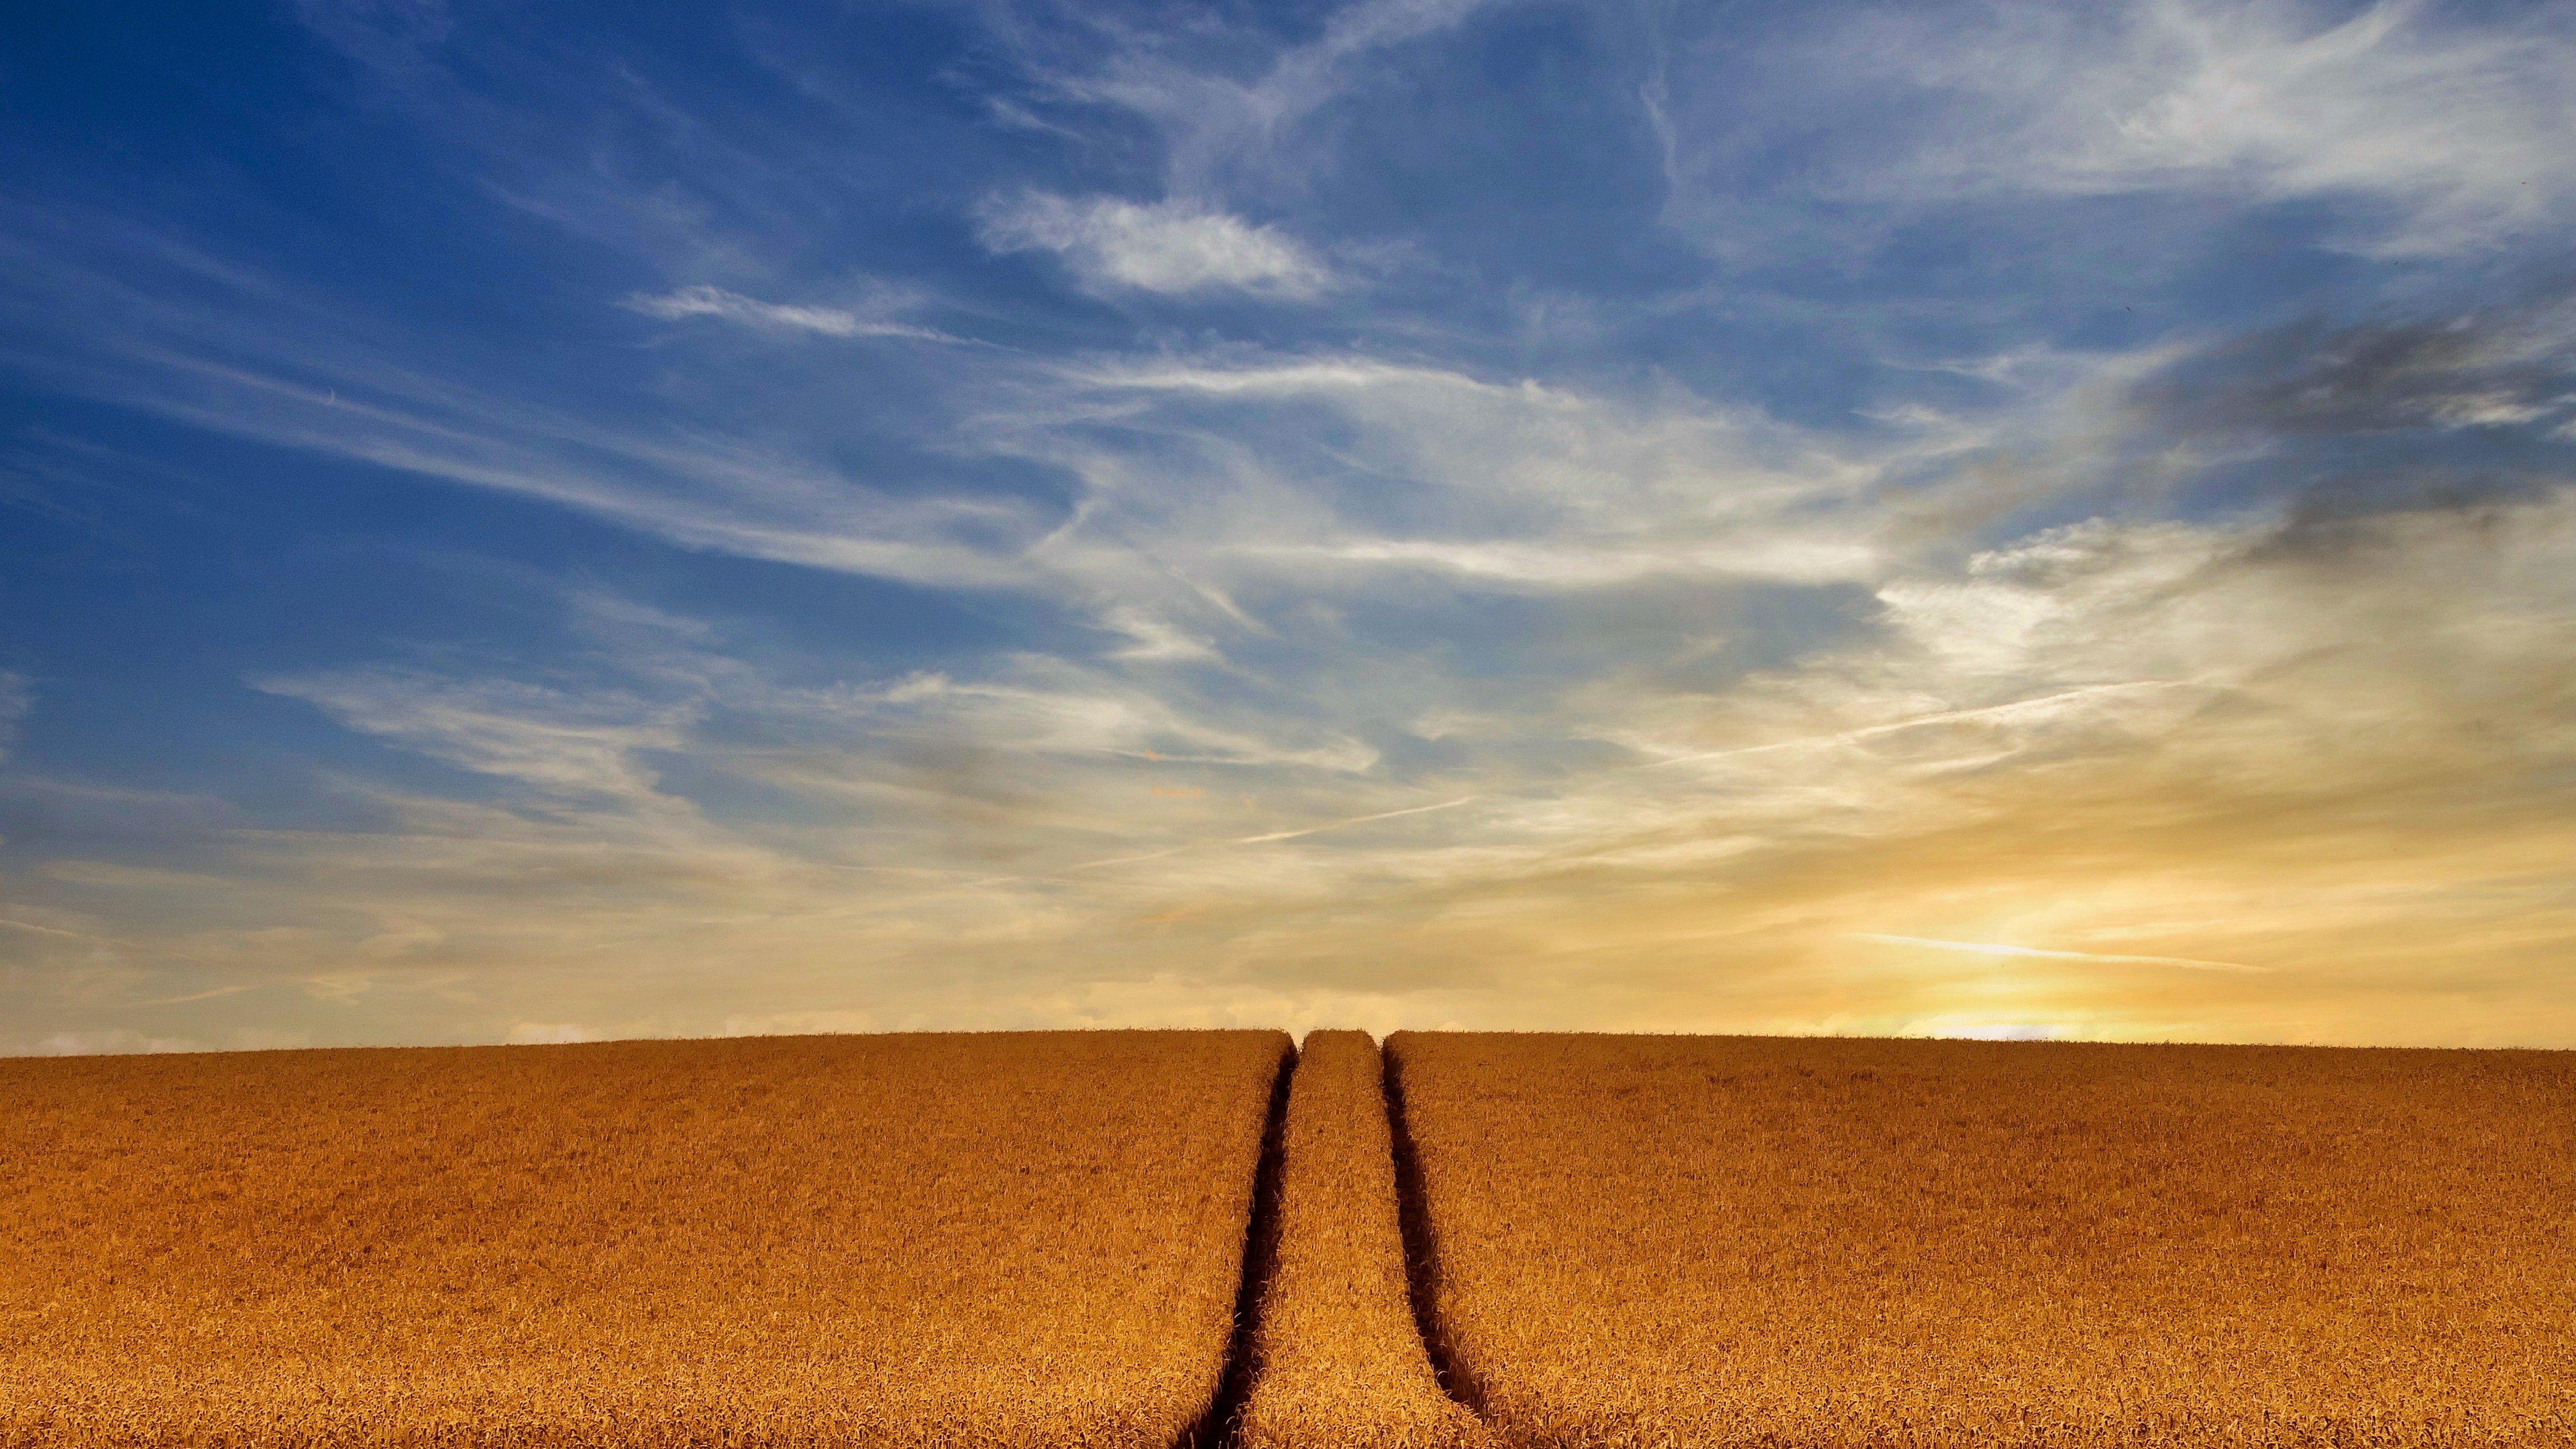 HD desktop wallpaper: Wheat, Earth, Field, Farm download free picture  #1036697